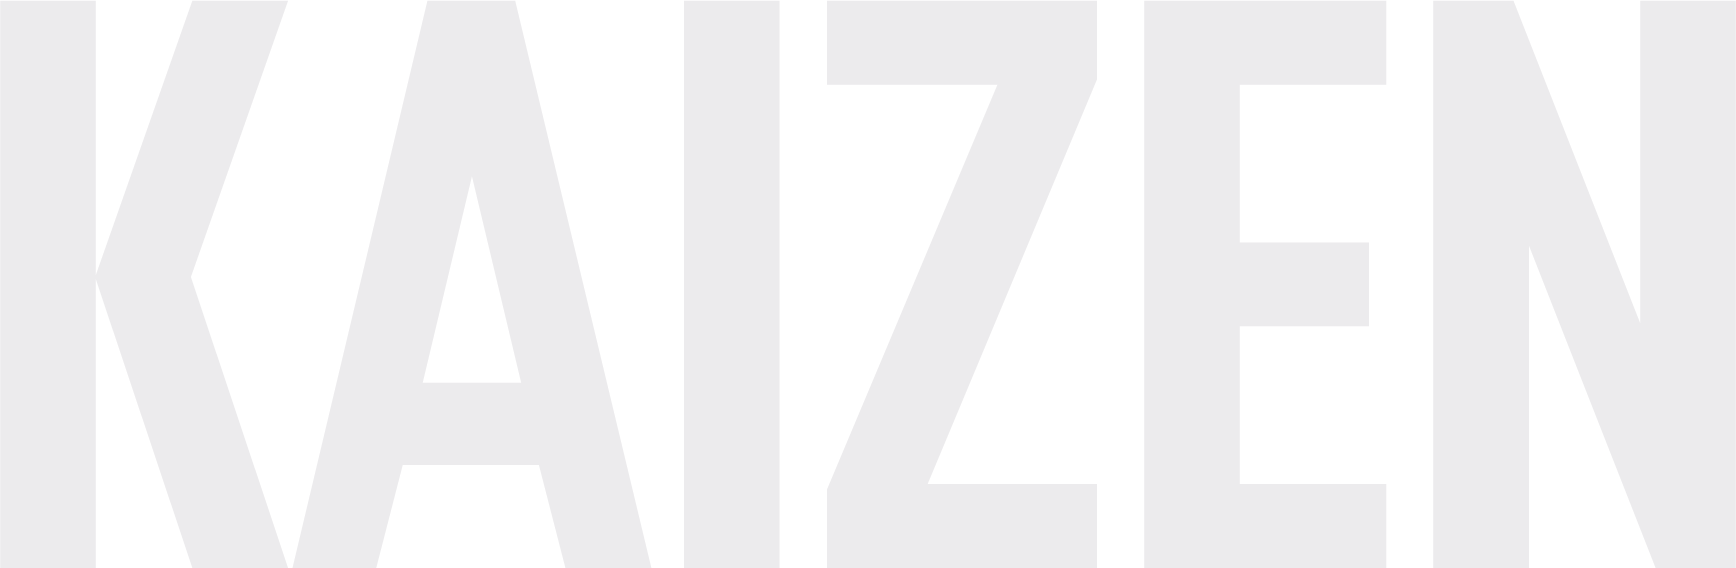 Kaizen_Logotype-White